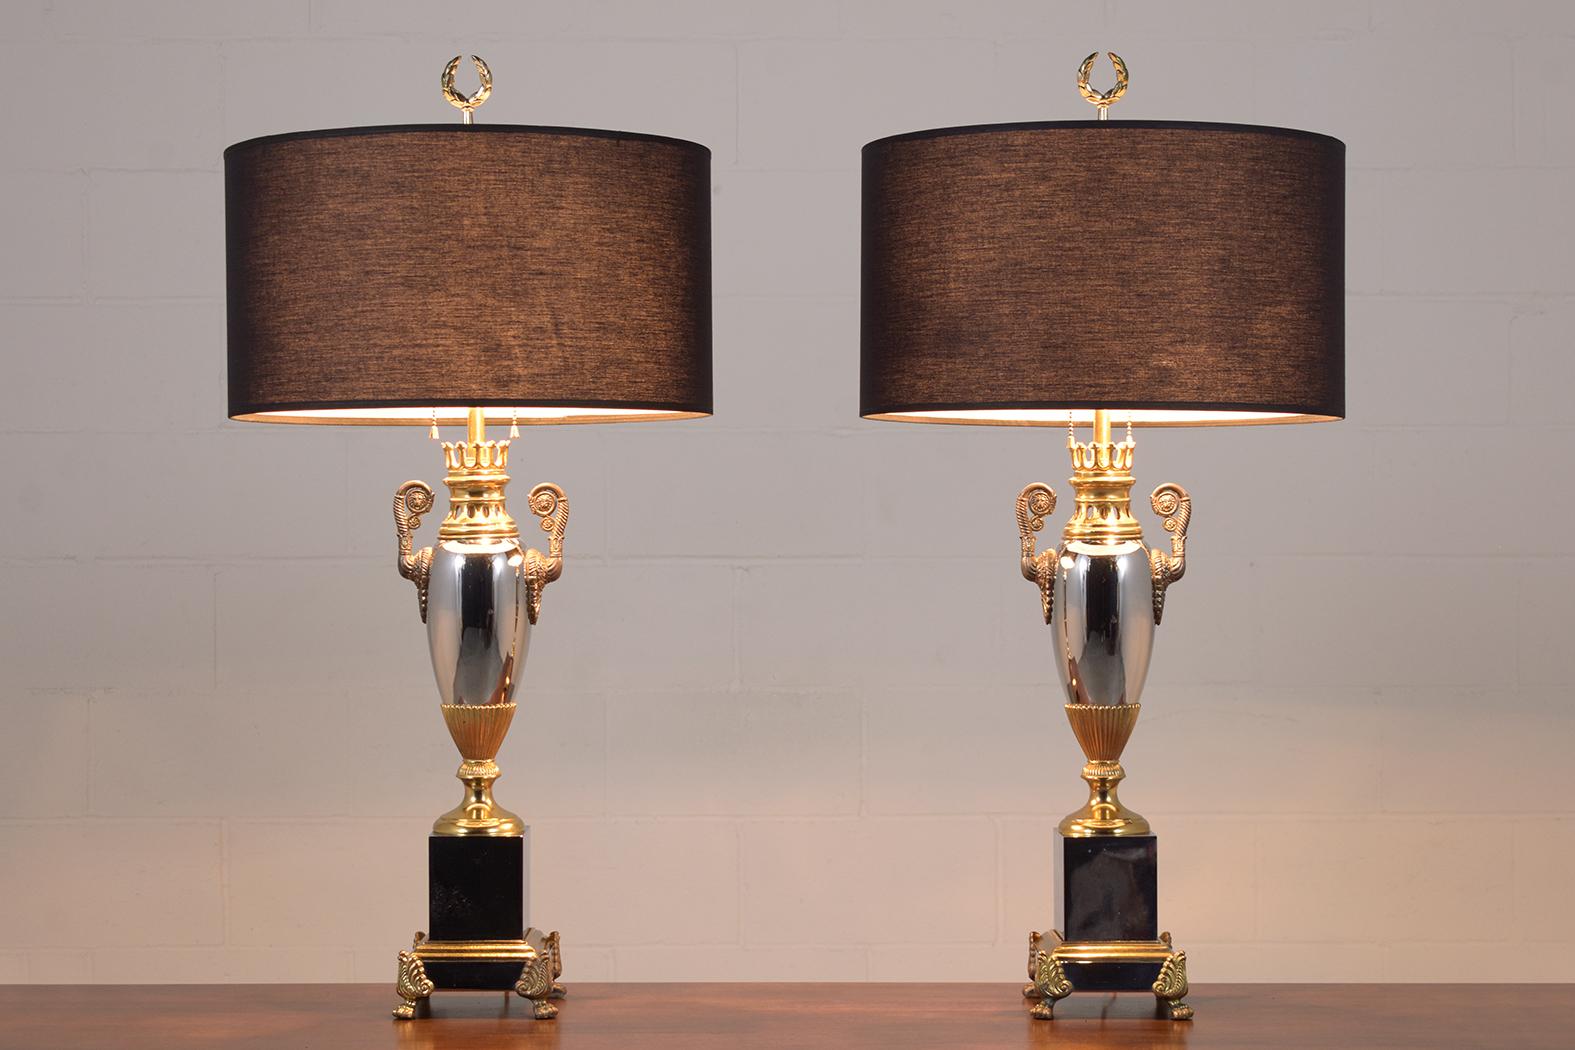 Tauchen Sie ein in die Eleganz der 1950er Jahre mit unserem atemberaubenden Paar von Tischlampen im Regency-Stil. Die in sorgfältiger Handarbeit aus Metall gefertigten Lampen sind in einer harmonischen Mischung aus versilbertem und vergoldetem